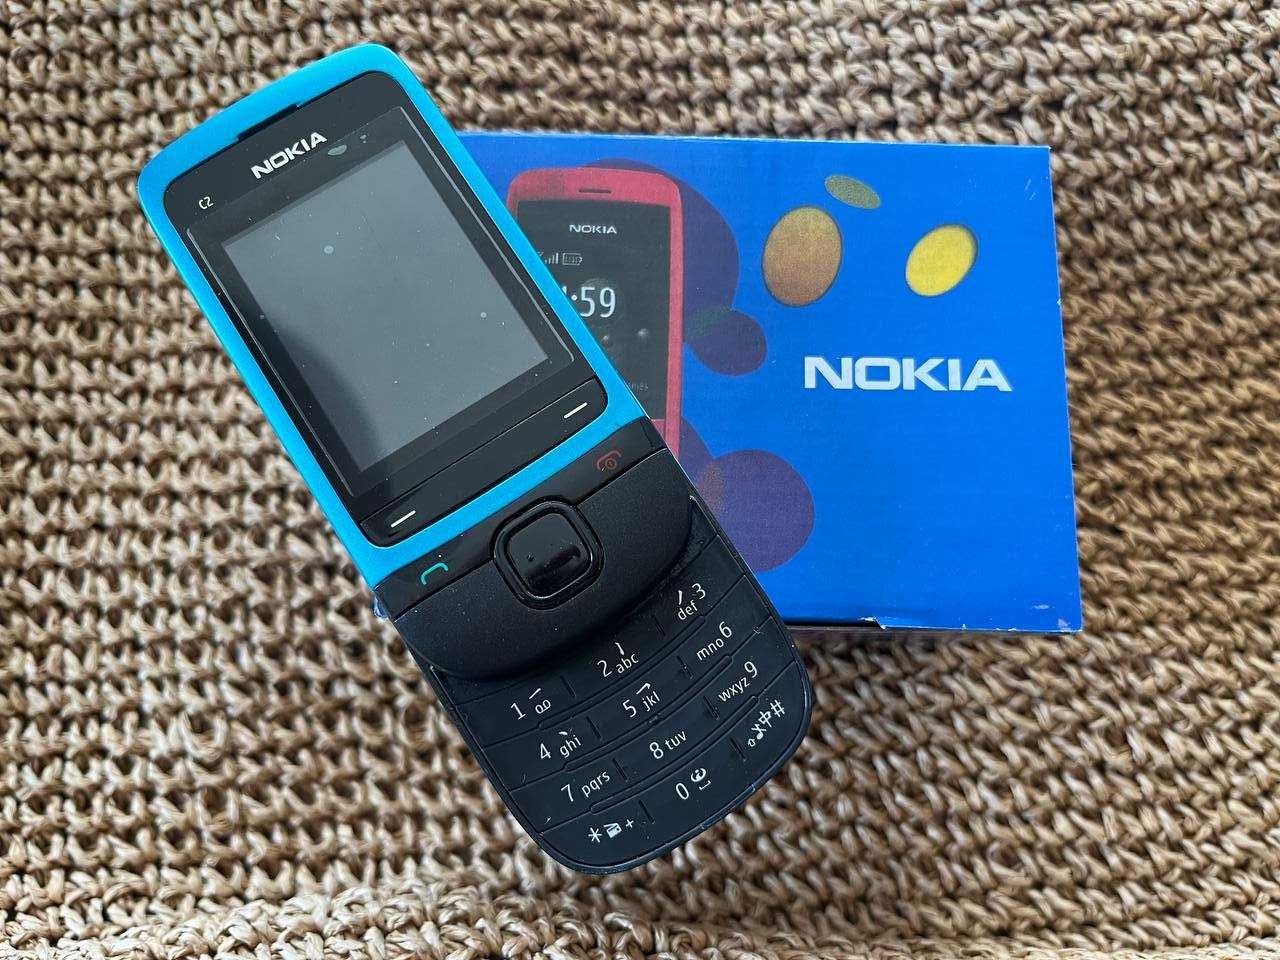 Винтажный GSM Nokia C2-05  слайдер новый телефон черно-синий в коробке